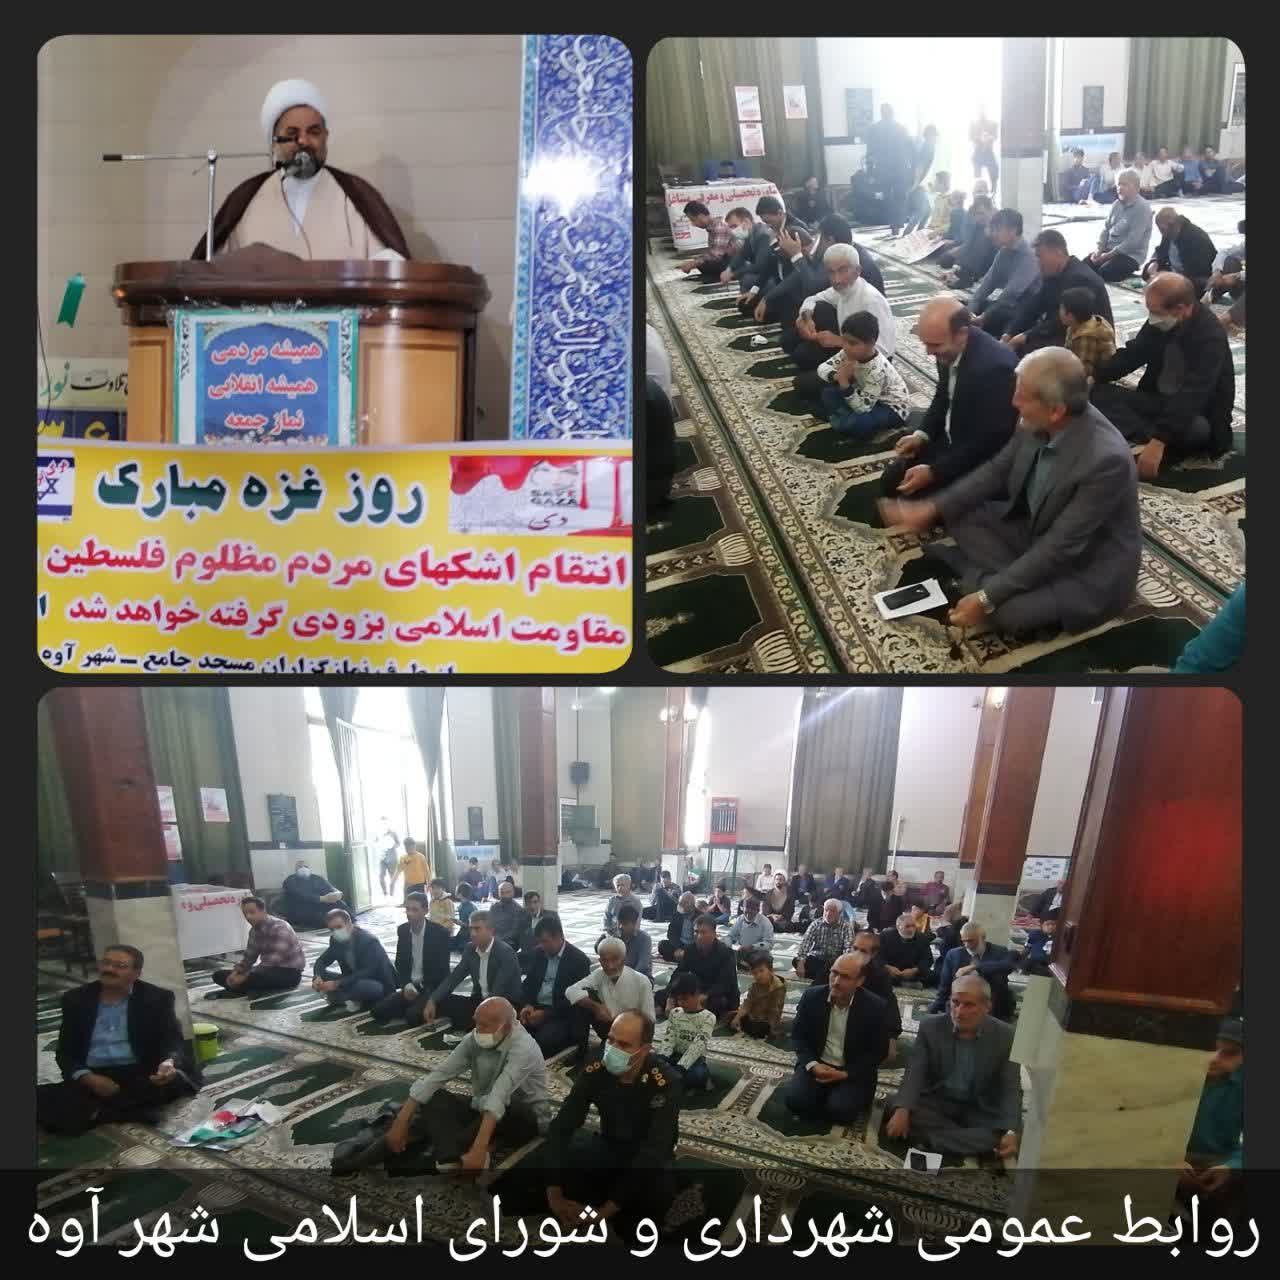 حضور شهردار و اعضای شورای اسلامی شهر آوه در نماز عبادی سیاسی جمعه مورخ ۹ اردیبهشت